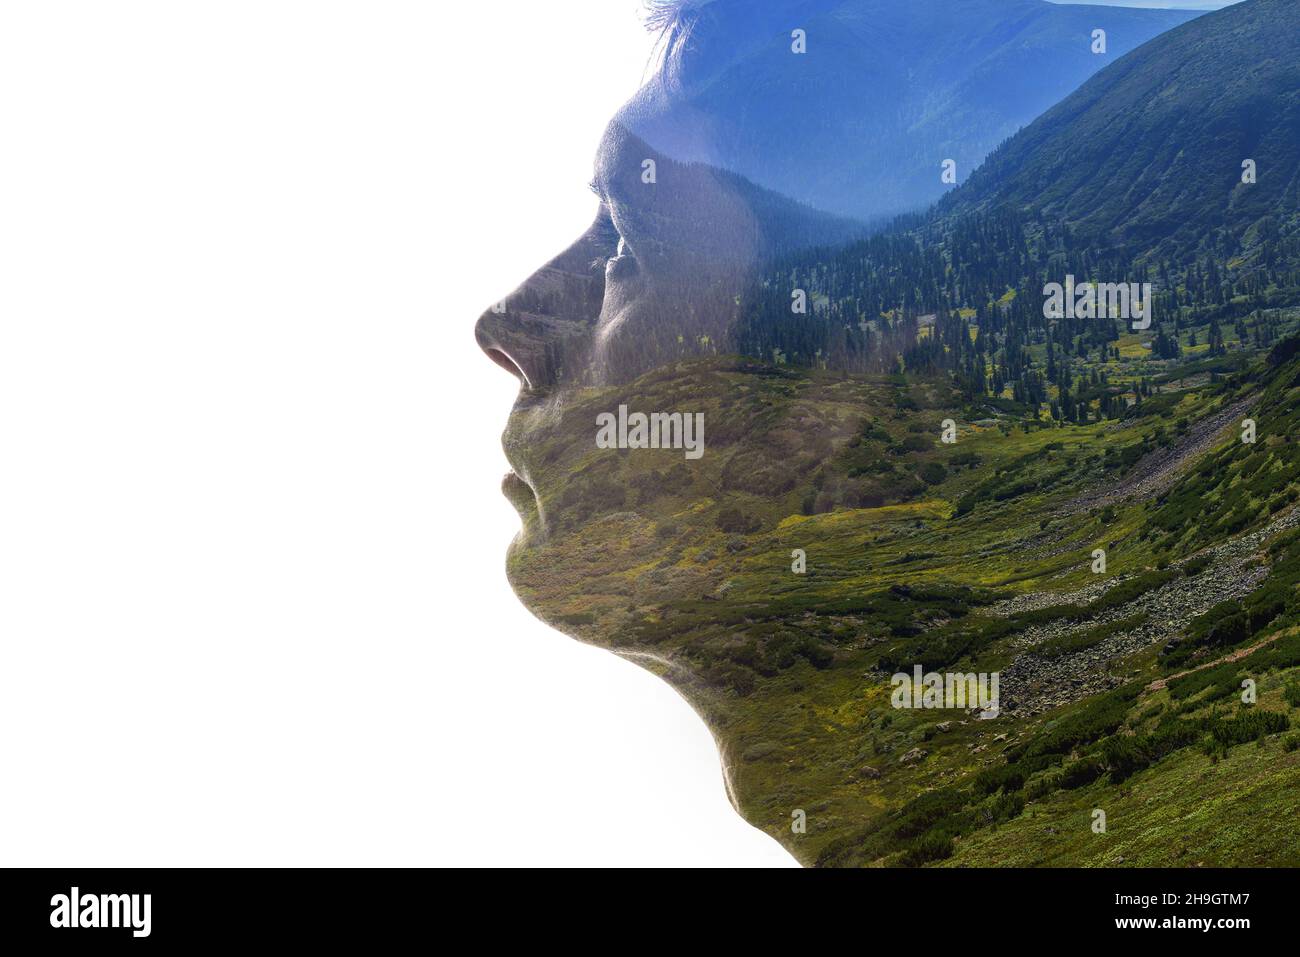 Isolierte Kombination aus der Silhouette eines Männergesichts und einer Landschaft mit Bergen. Konzept der Verbindung zwischen Mensch und Natur Stockfoto